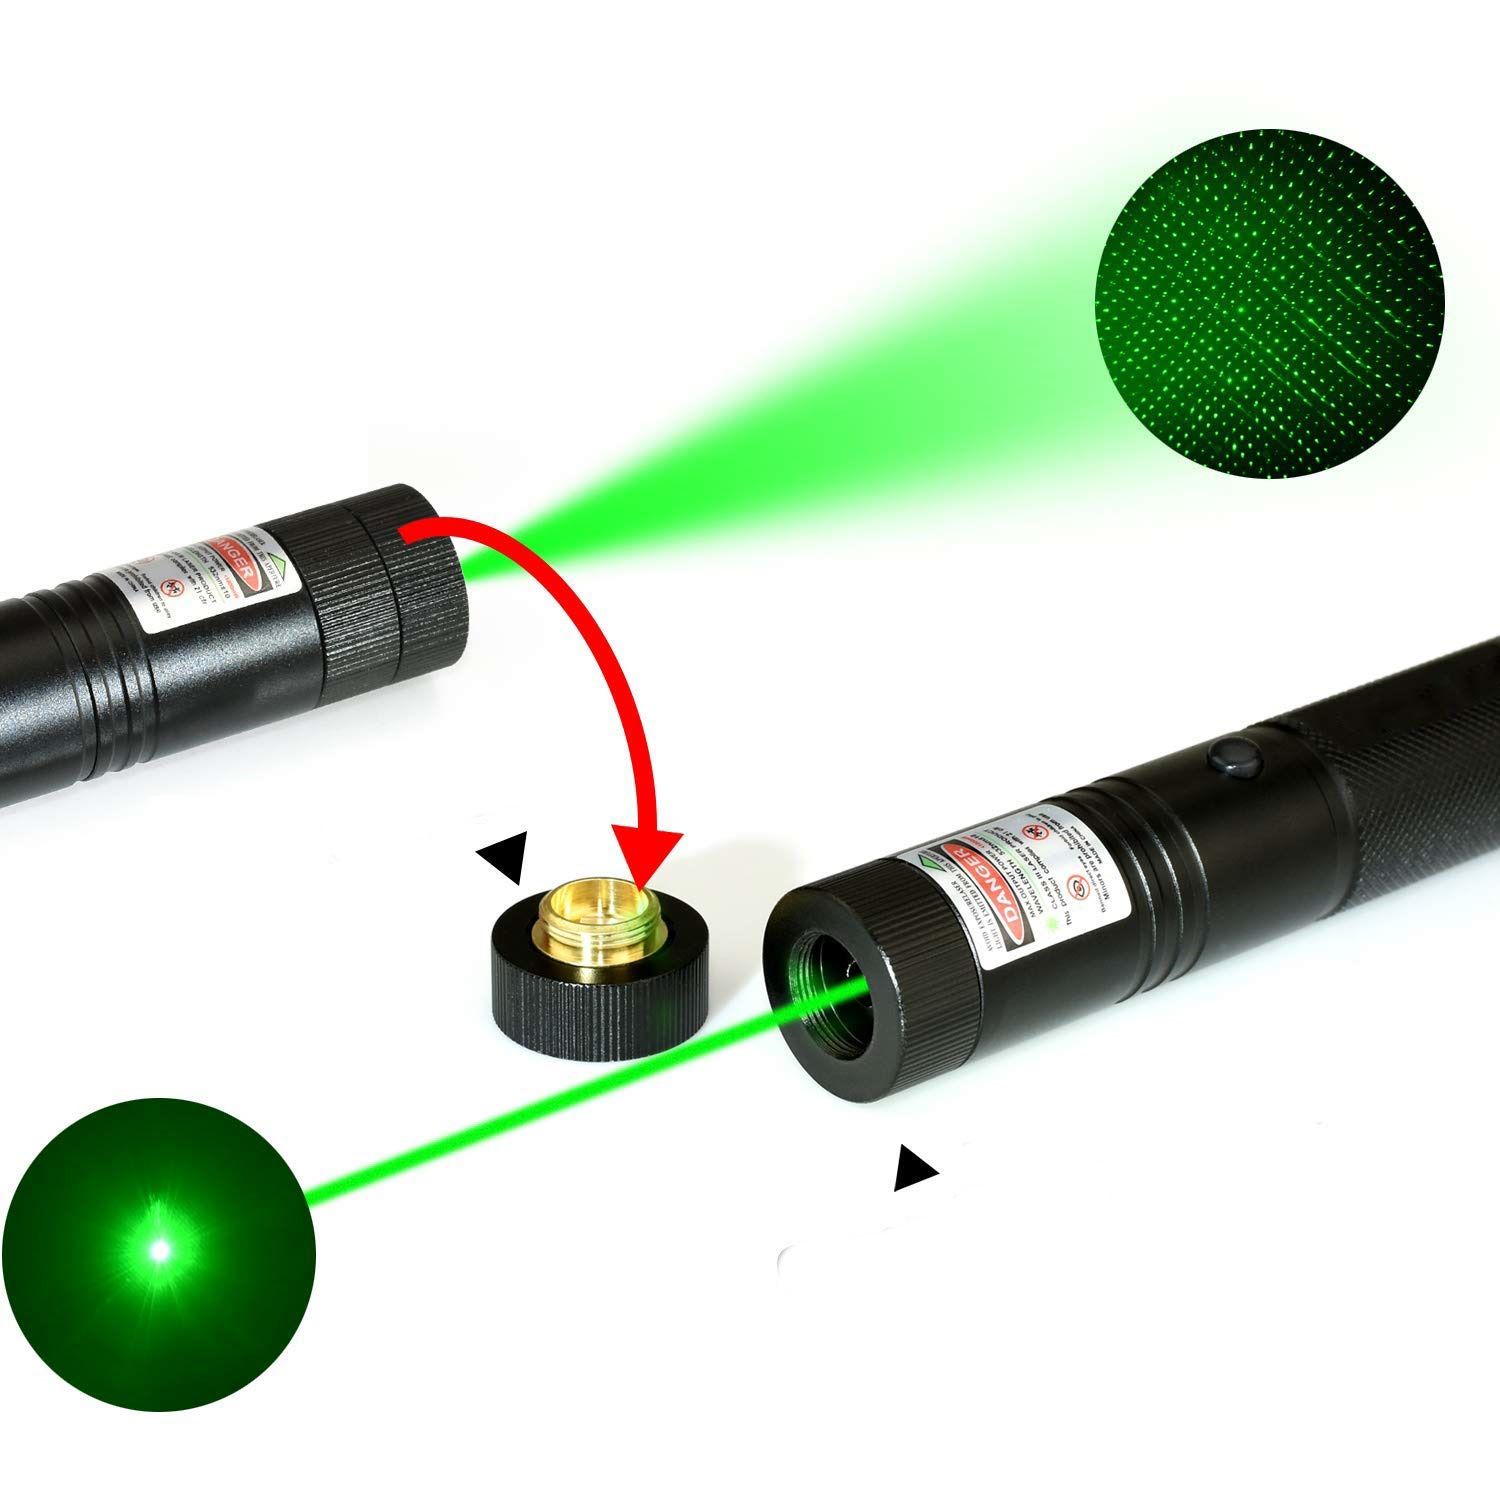 لیزر پوینتر حرارتی مدل Laser 303 با برد 12 کیلومتر